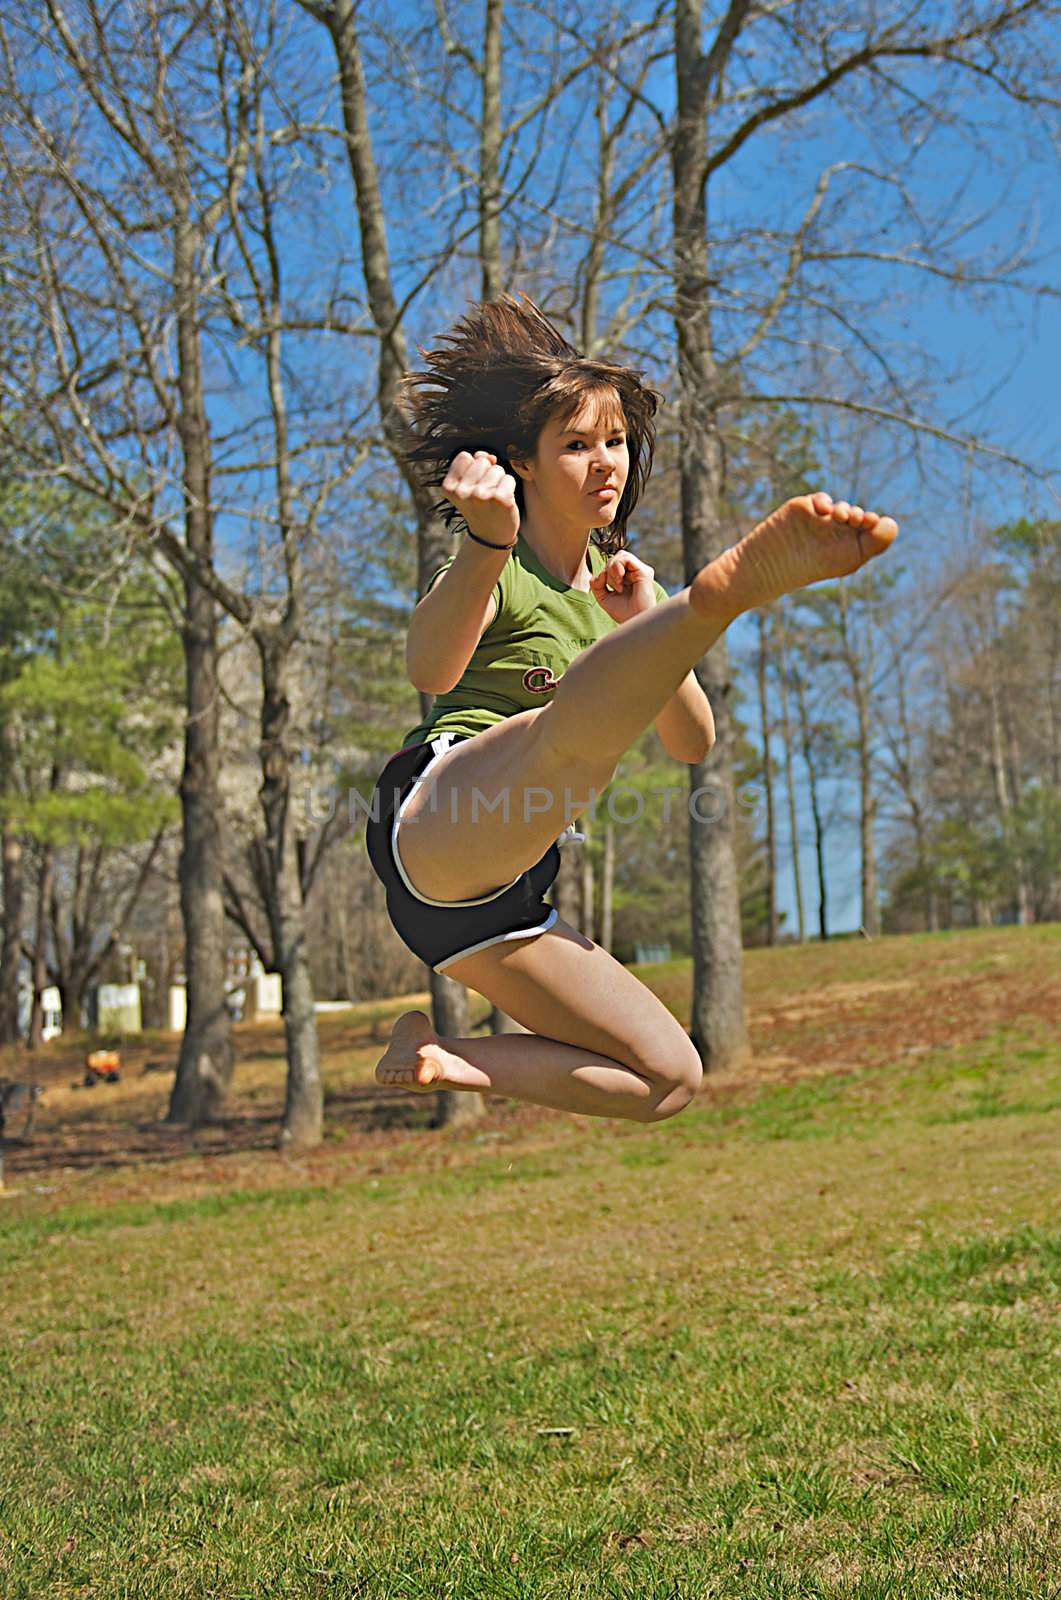 Running Jump Kick by dmvphotos